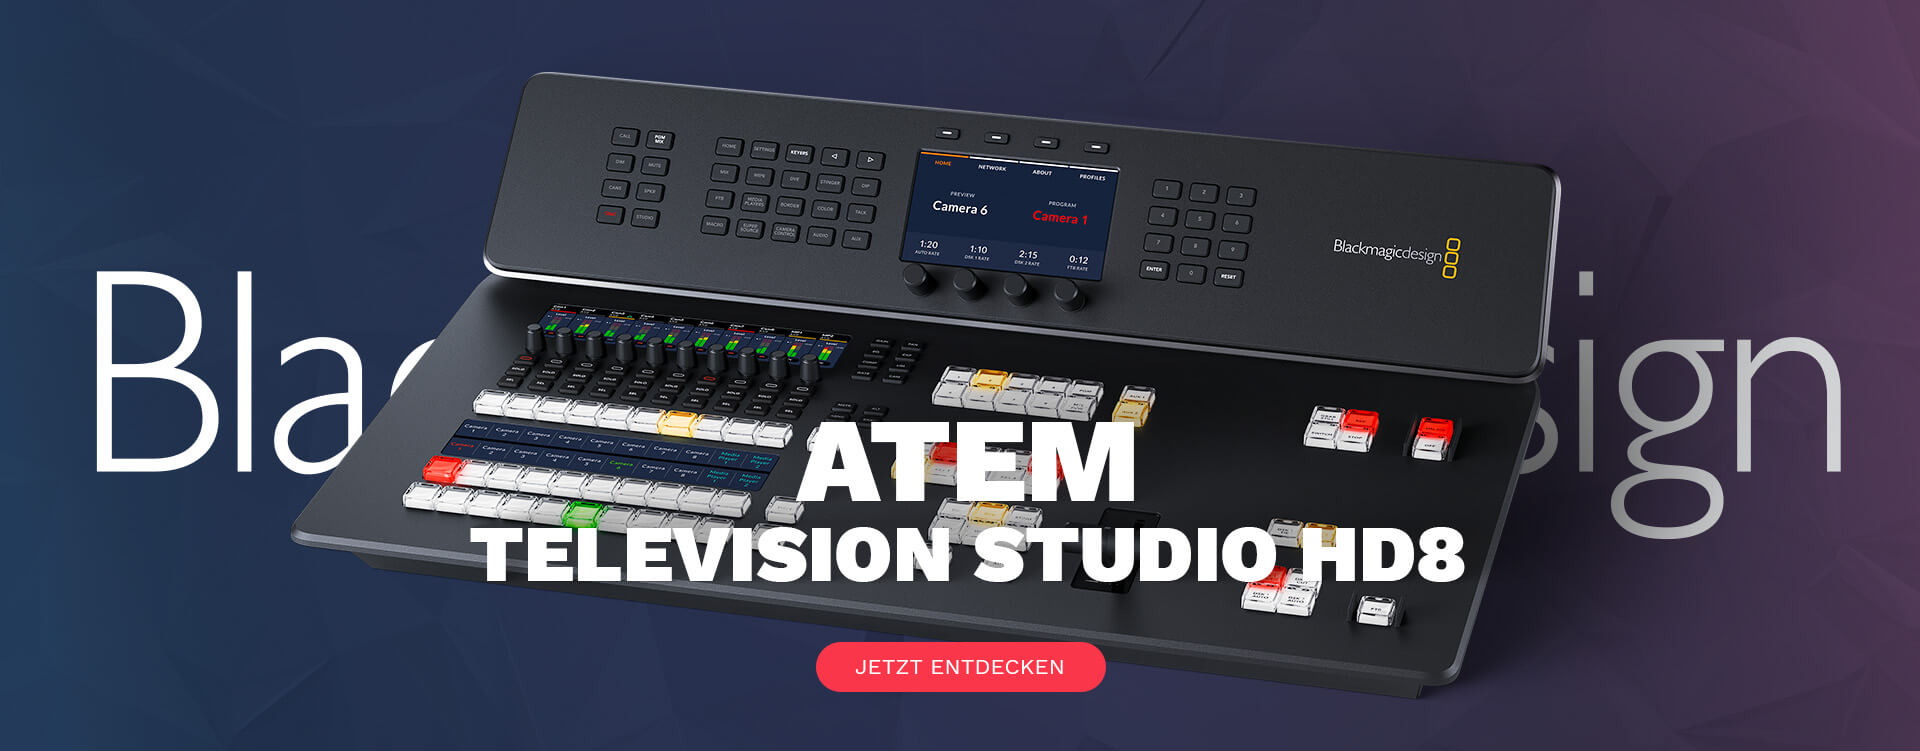 Atem Television Studio